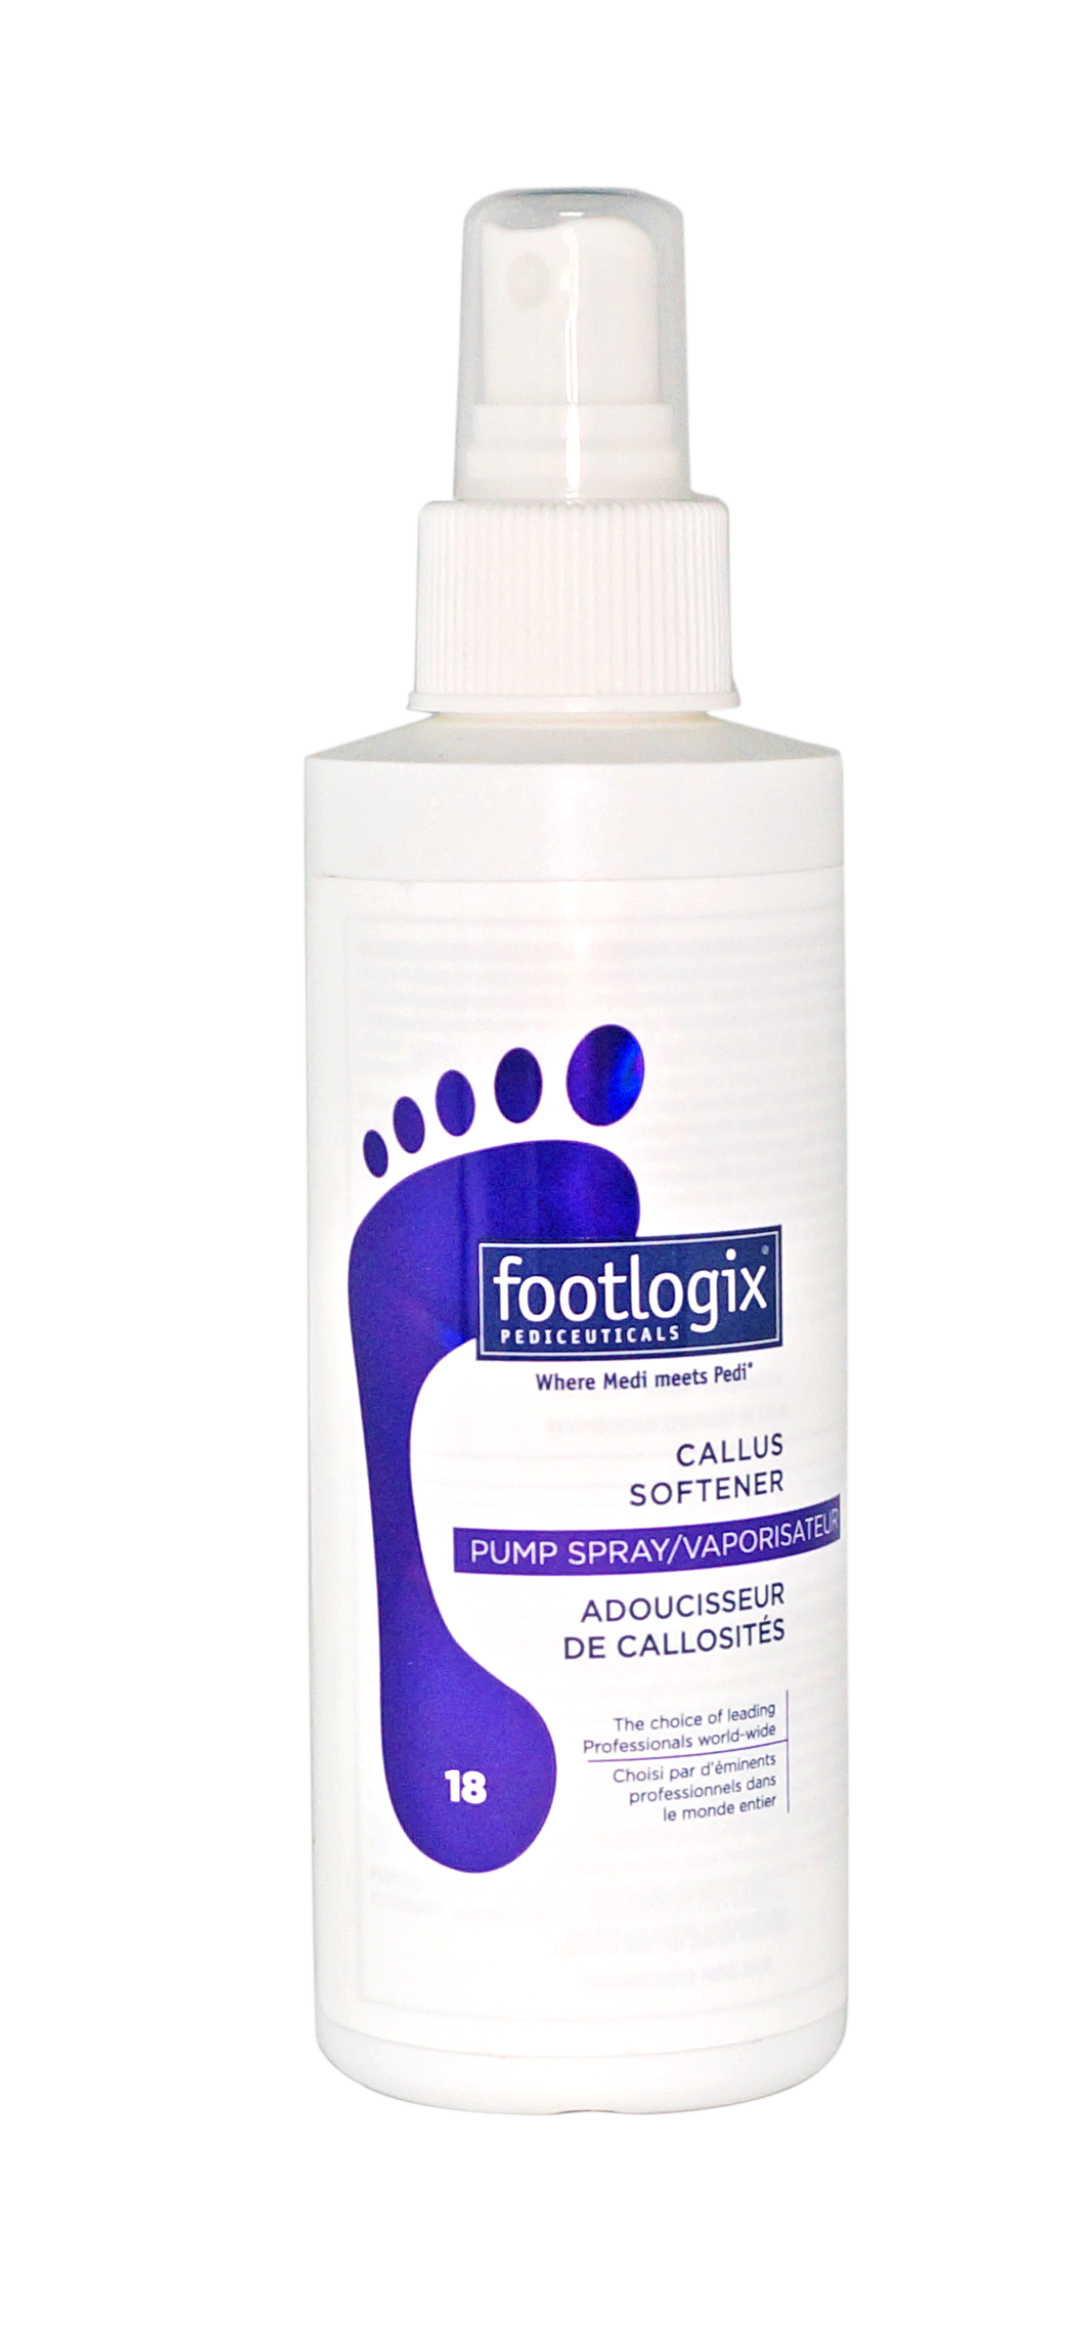 Footlogix Professional Callus Softener, 180ml/6.1oz